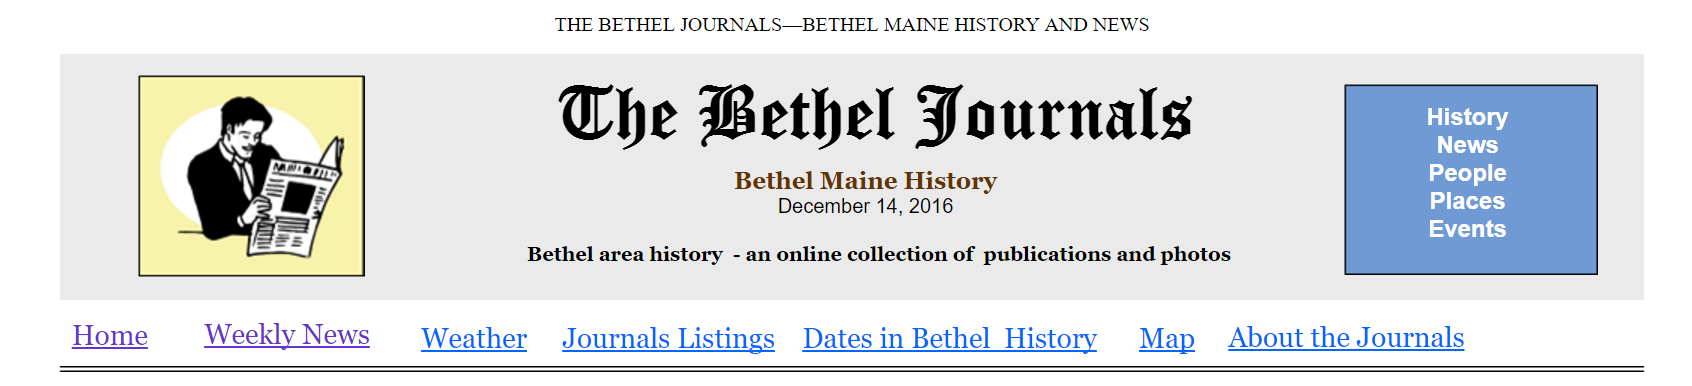 The Bethel Journals